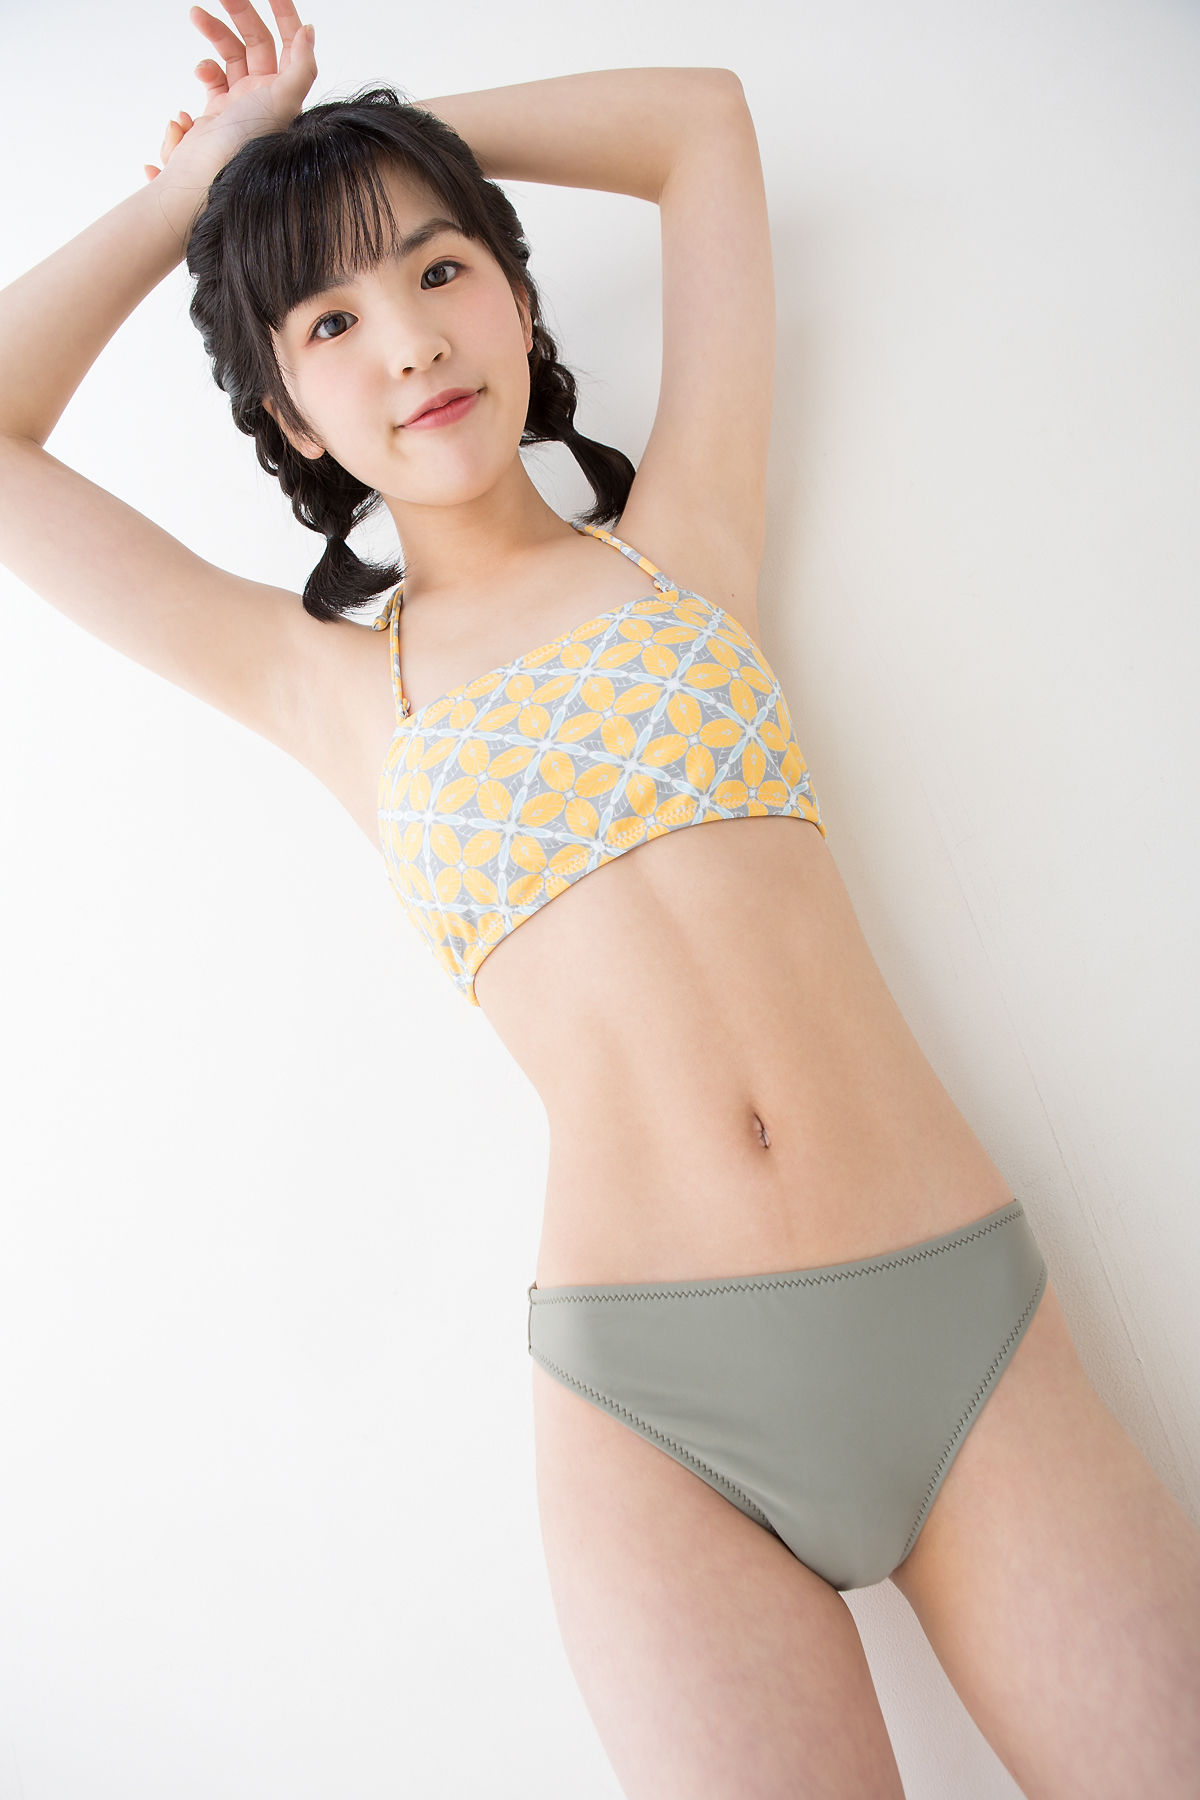 [Minisuka.tv] Ami Manabe 眞辺あみ - Fresh-idol Gallery 47 第30页 No.dd1a52